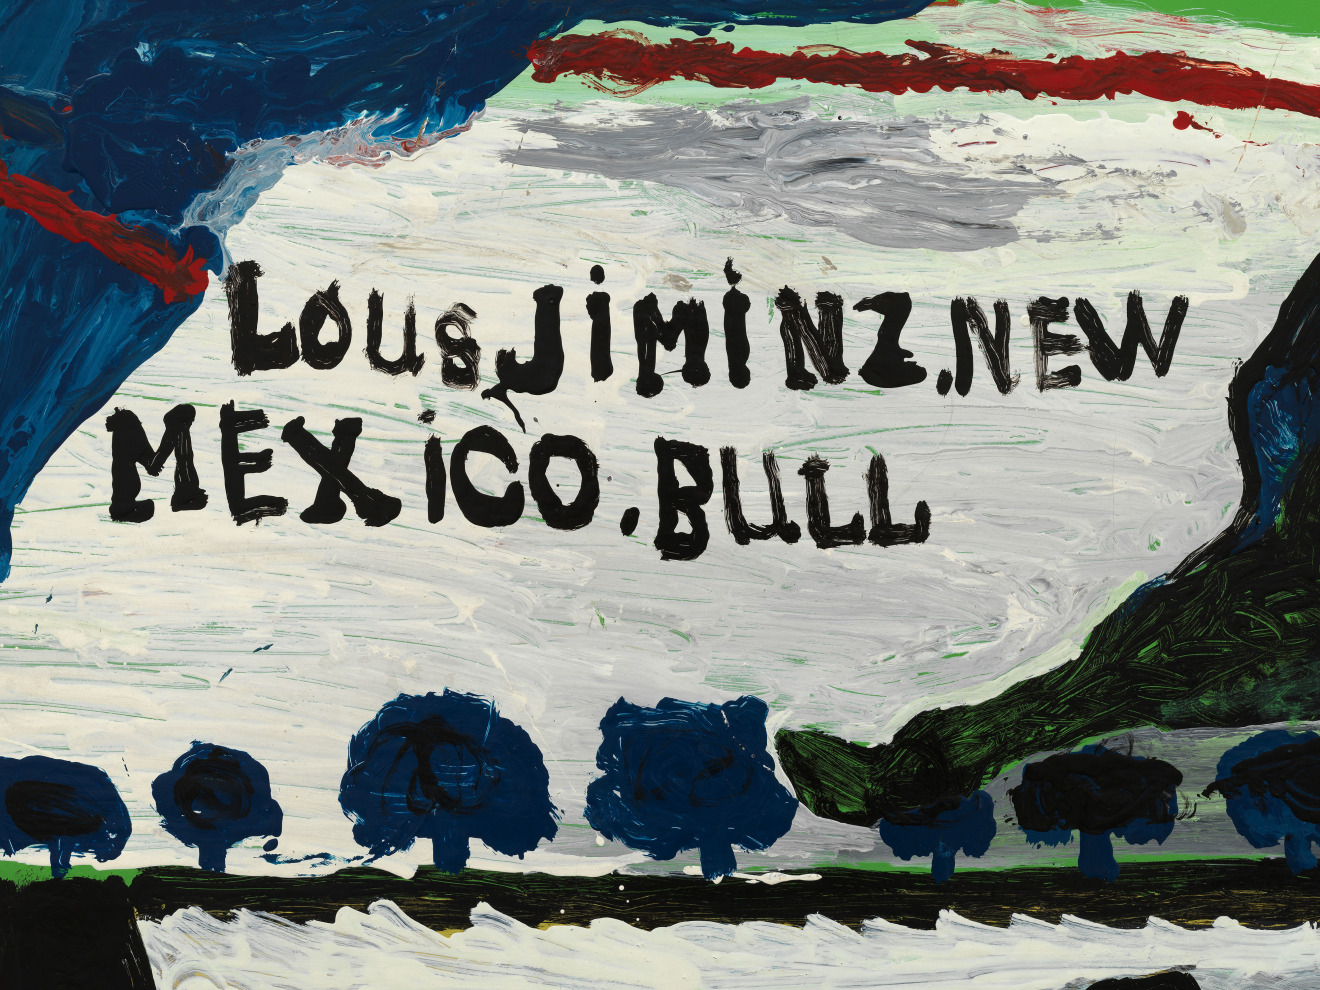 William Hawkins, LOUS JIMINZ NEW MEXICO BULL, 1985